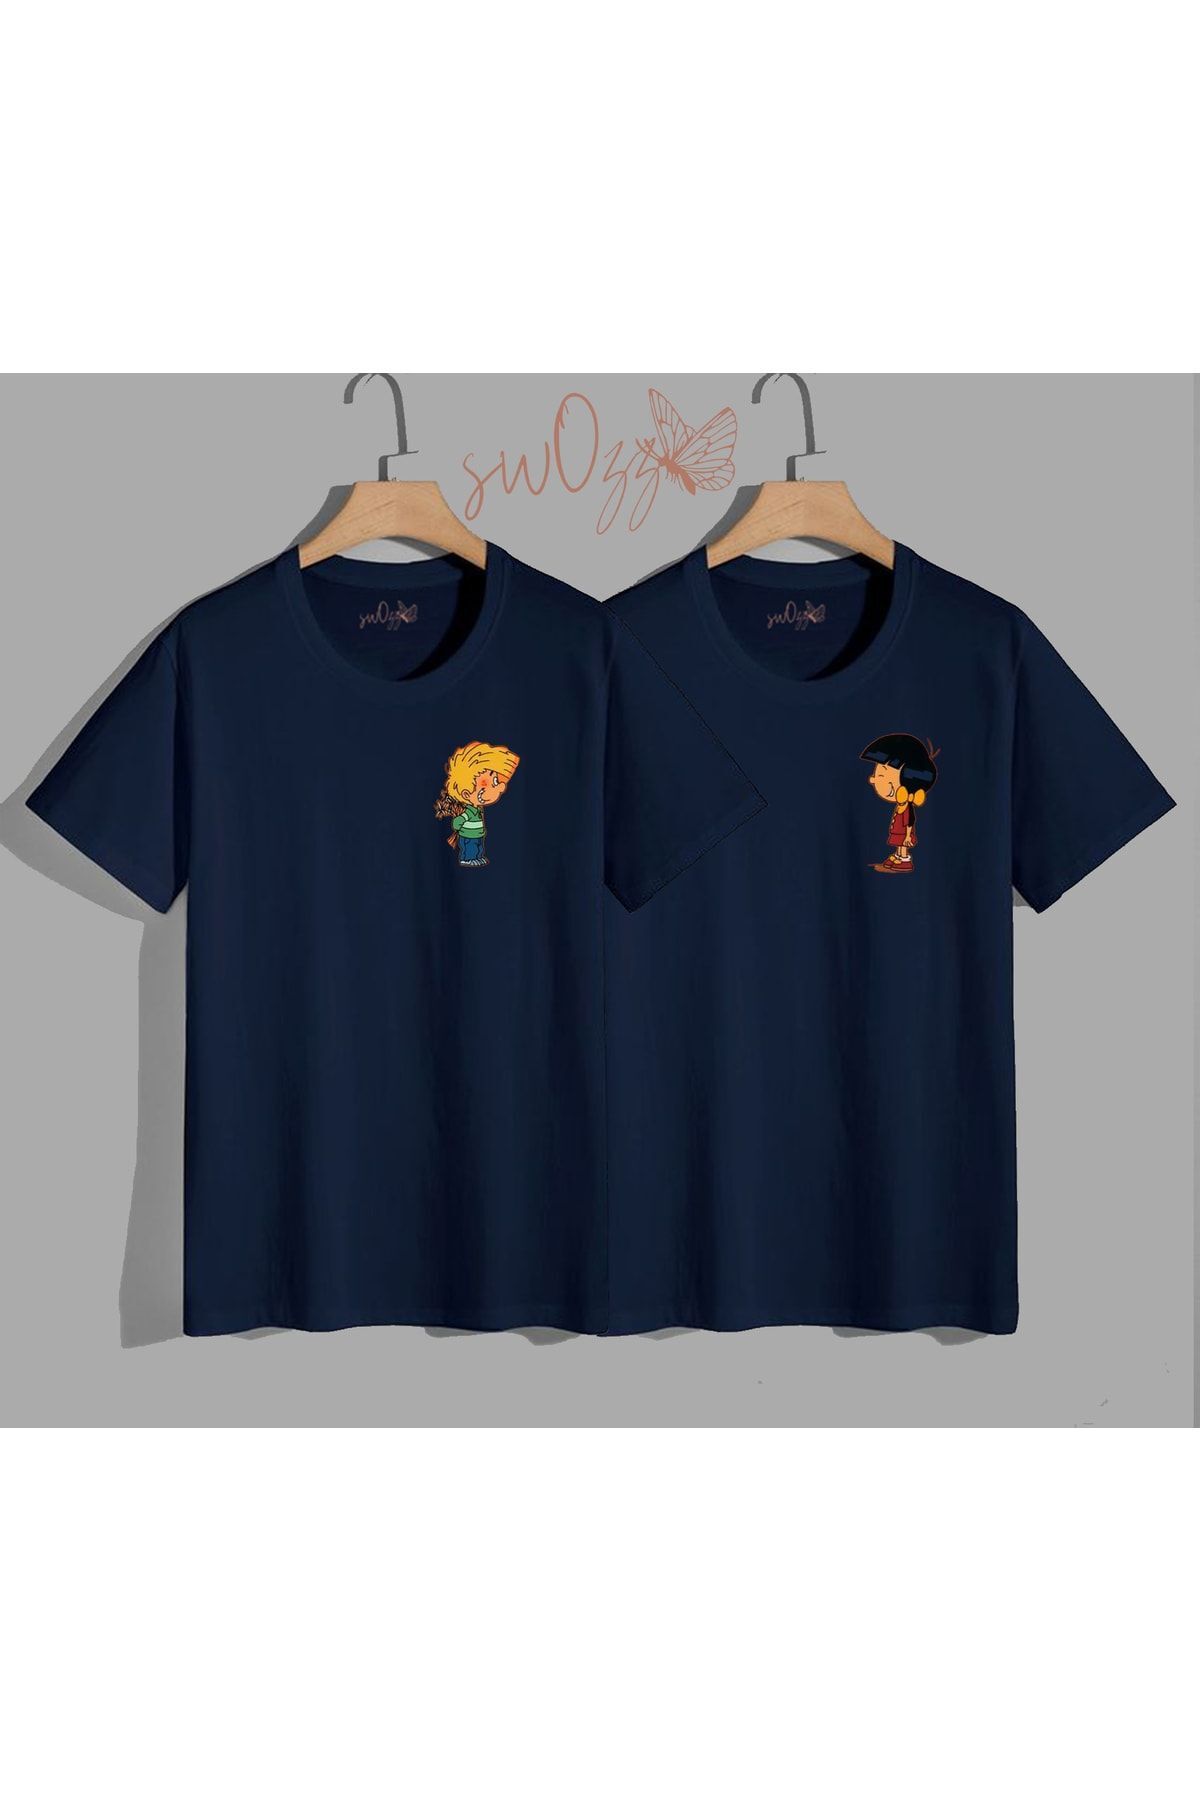 swOzz Cedric Ve Chen Baskılı Sevgili Tişört Kombini Çift Tshirt 2 Adet